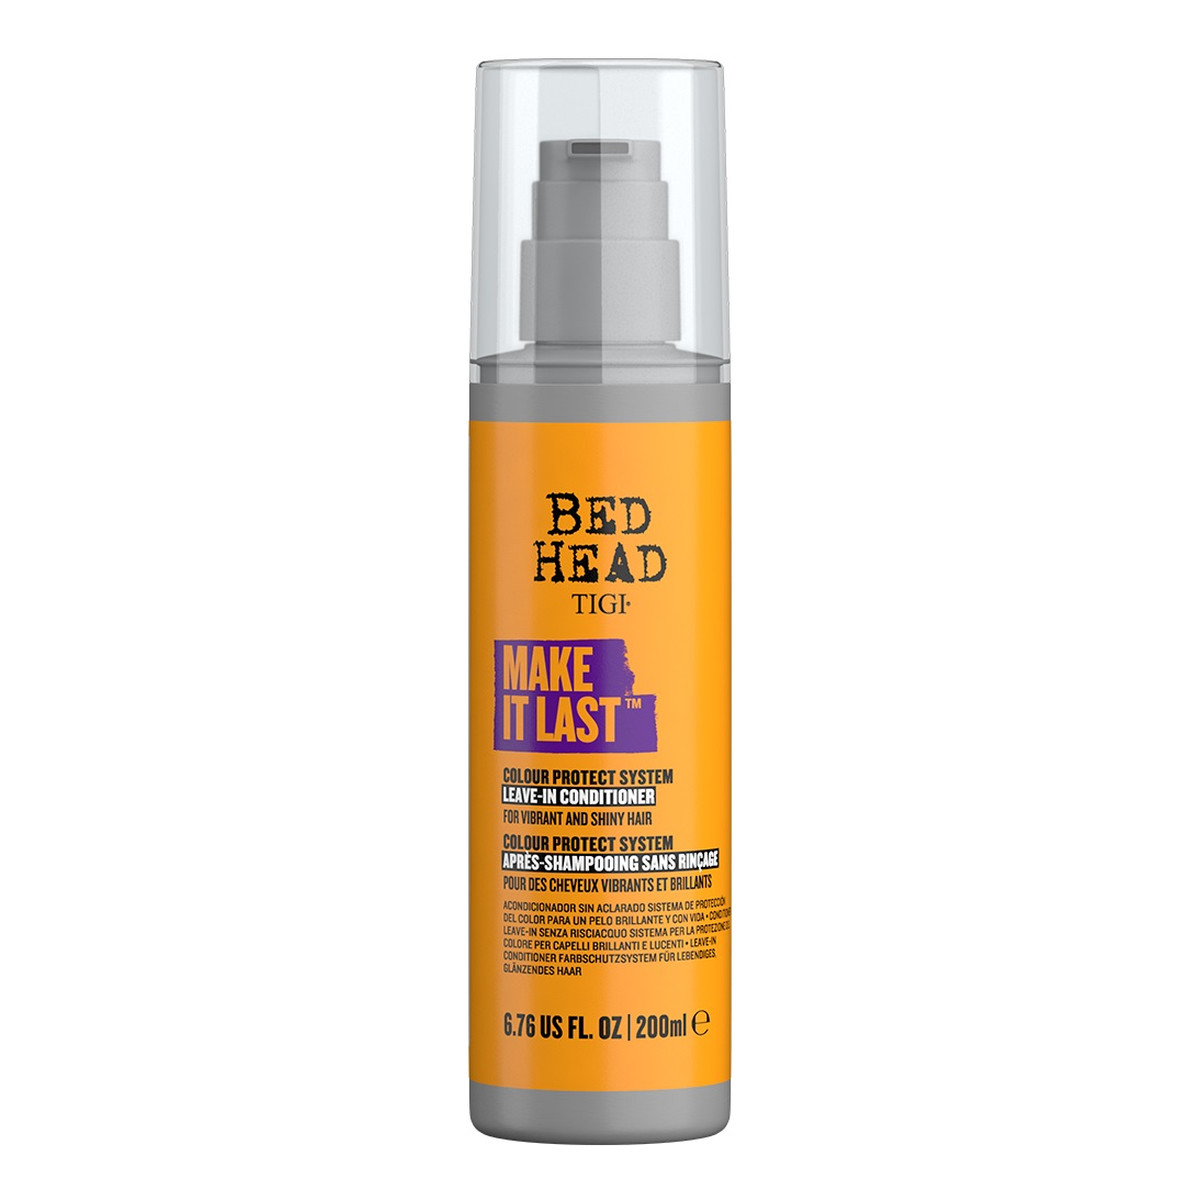 Tigi Bed head make it last leave in conditioner odżywka do włosów chroniąca kolor 200ml